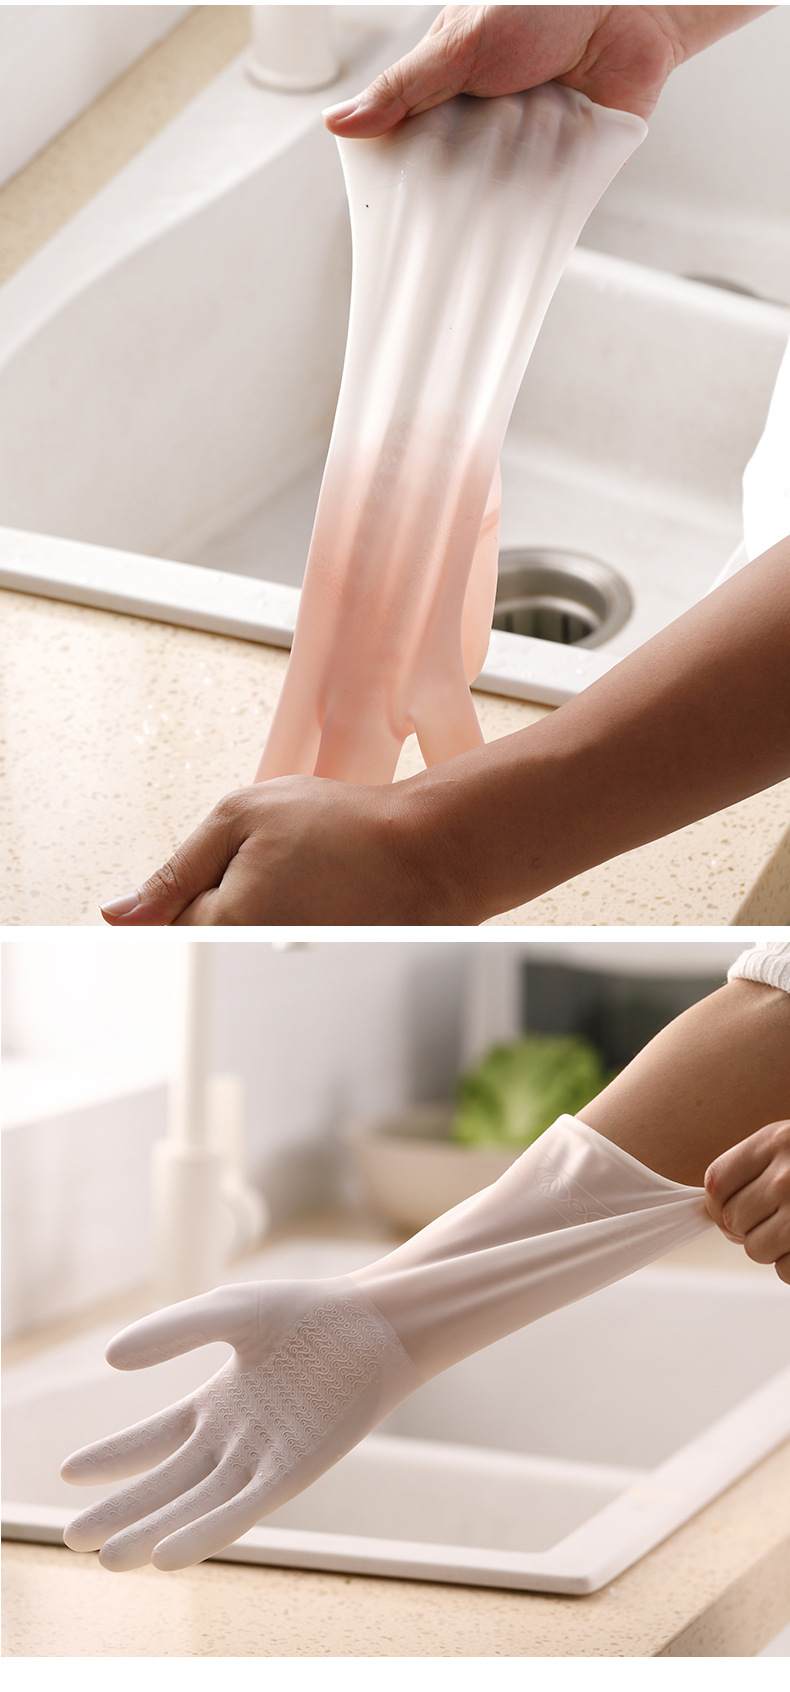 半透明橡膠手套 居家清潔手套 防滑耐用廚房手套 洗衣洗碗手套2